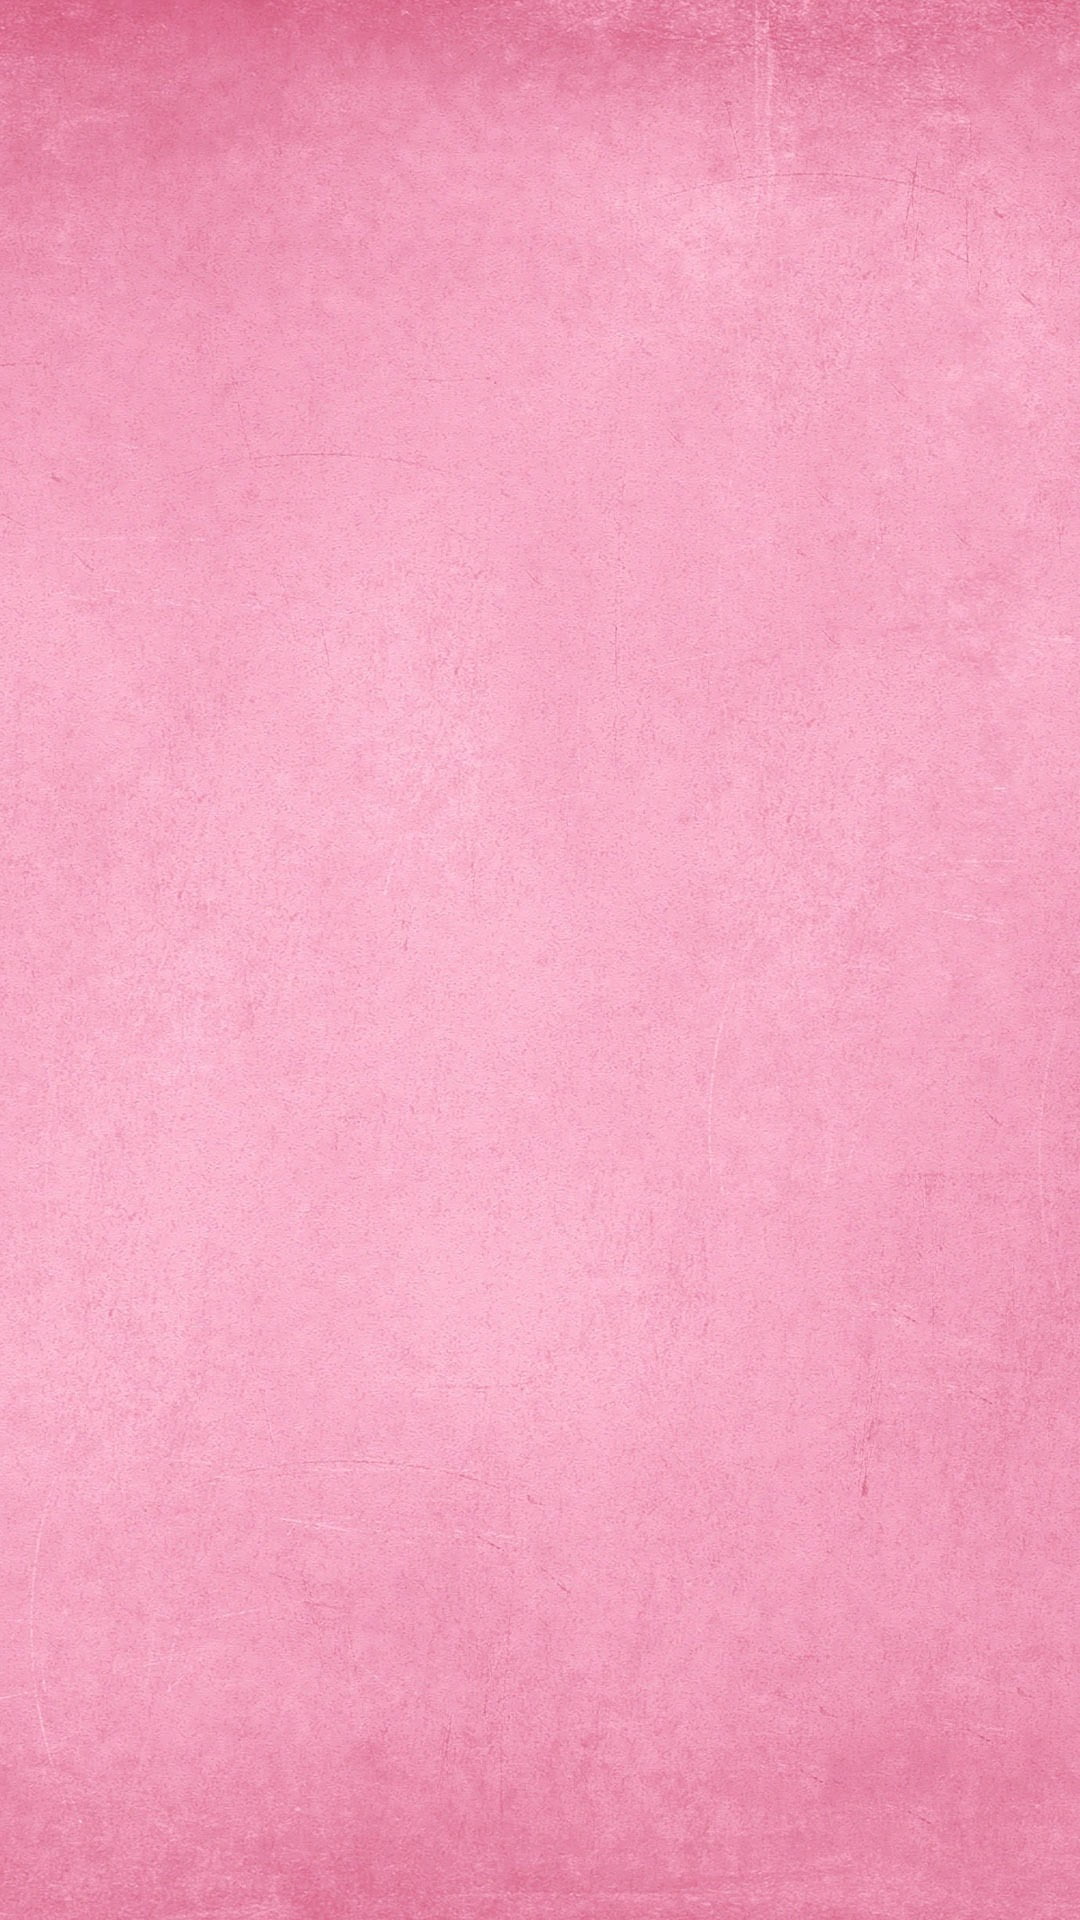 Sơn Dulux màu hồng đất - Mã số sơn Dulux màu hồng đất